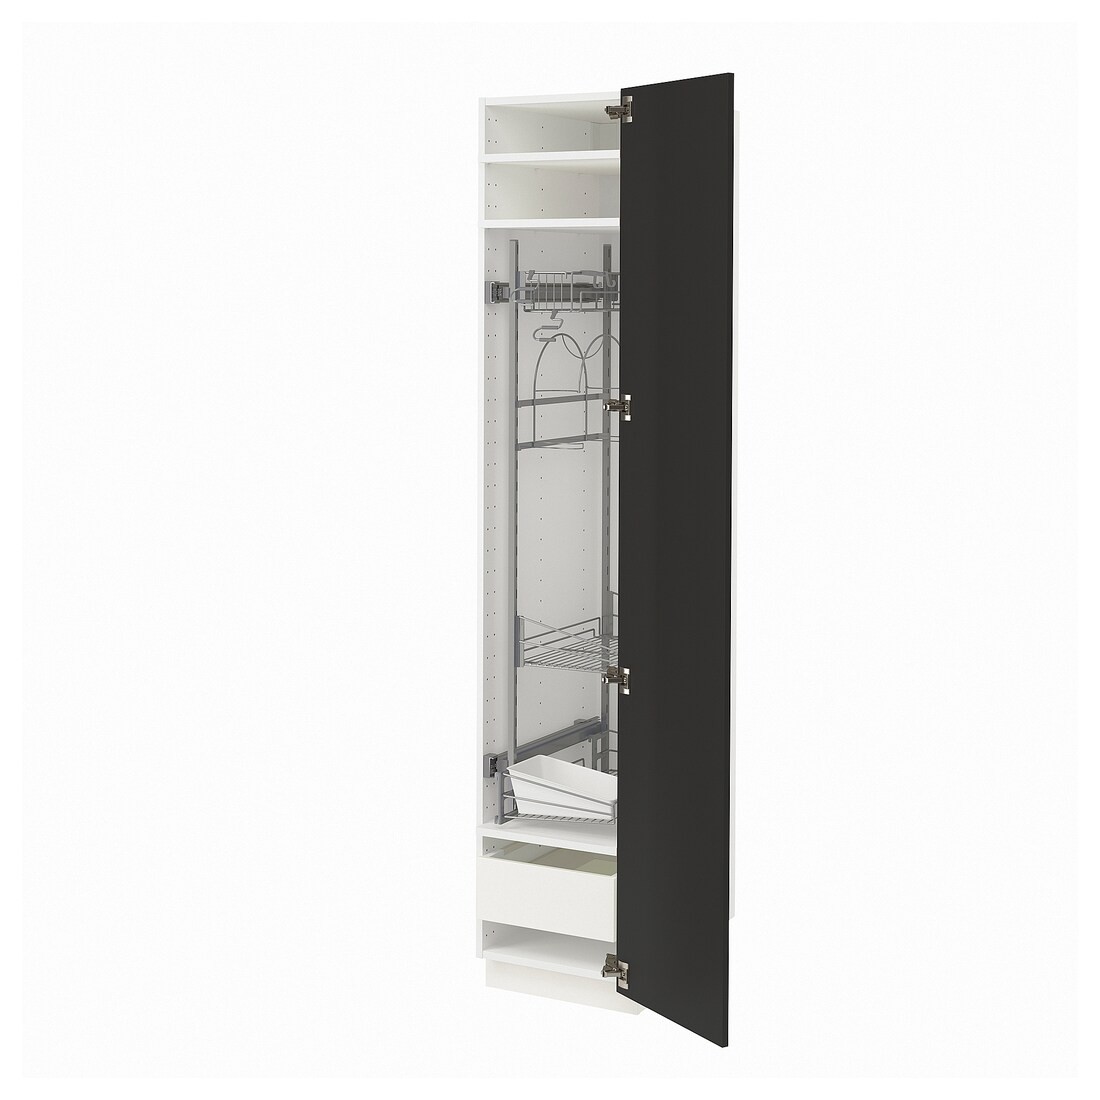 METOD МЕТОД / MAXIMERA МАКСИМЕРА Высокий шкаф с отделением для аксессуаров для уборки, белый / Nickebo матовый антрацит, 40x60x200 см